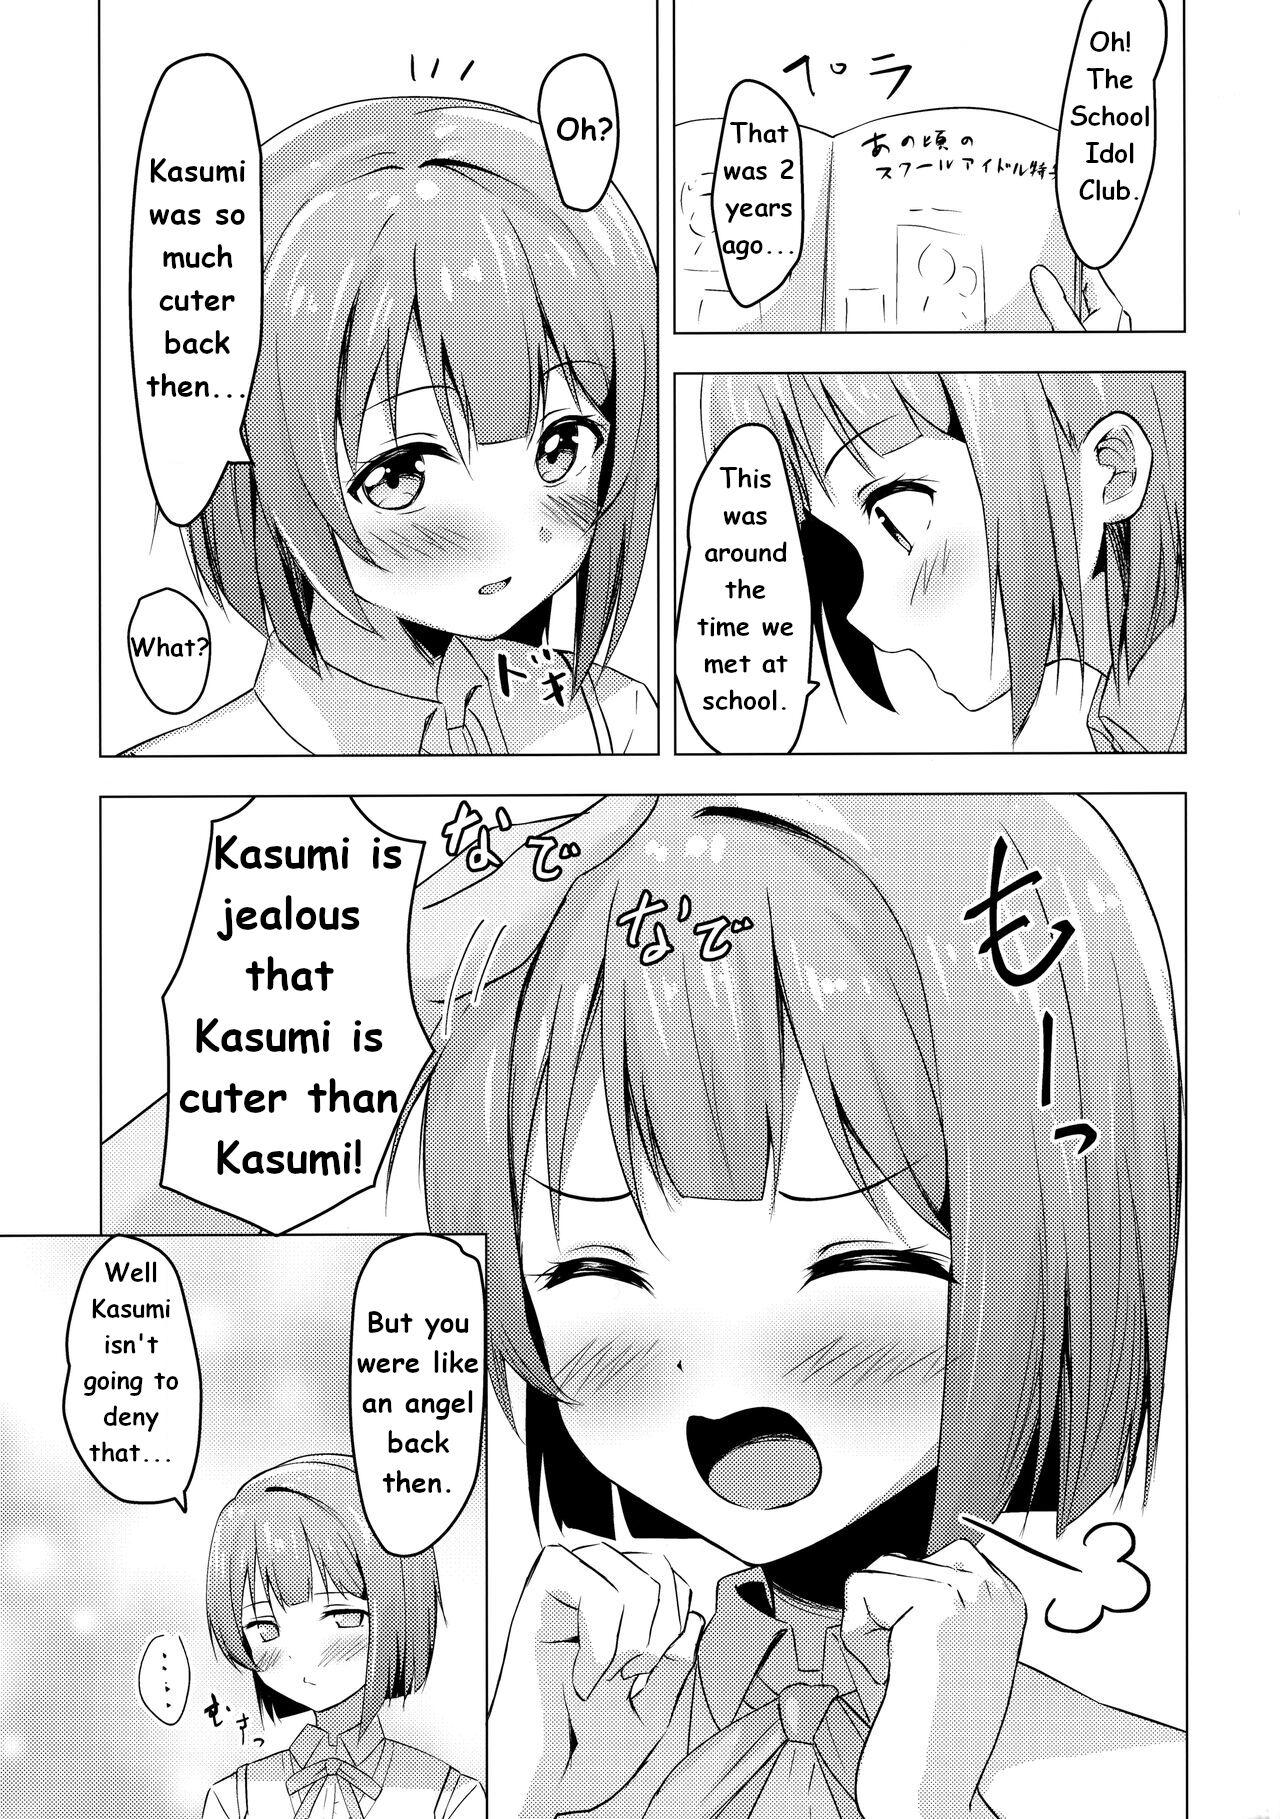 Kasumi Variable 4